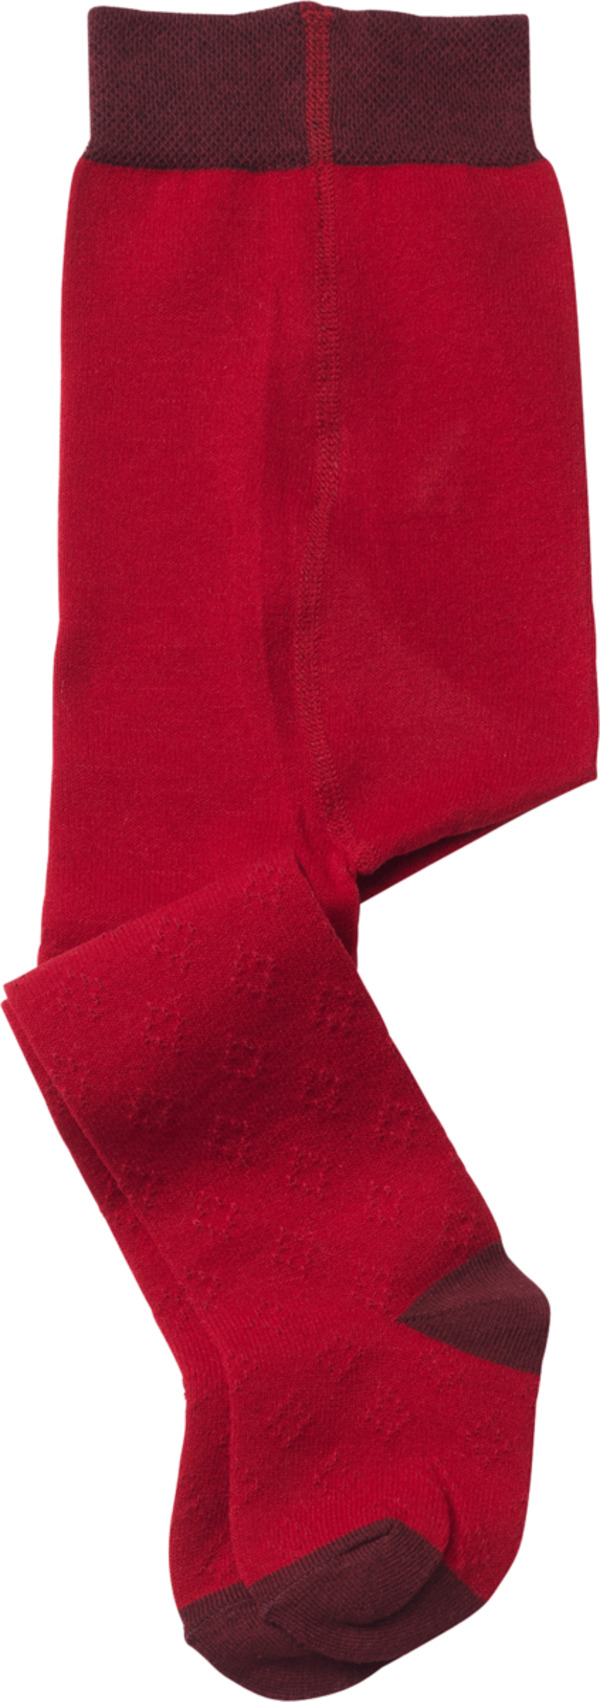 Bild 1 von ALANA Kinder Strumpfhose, Gr. 86/92, mit Bio-Baumwolle, rot